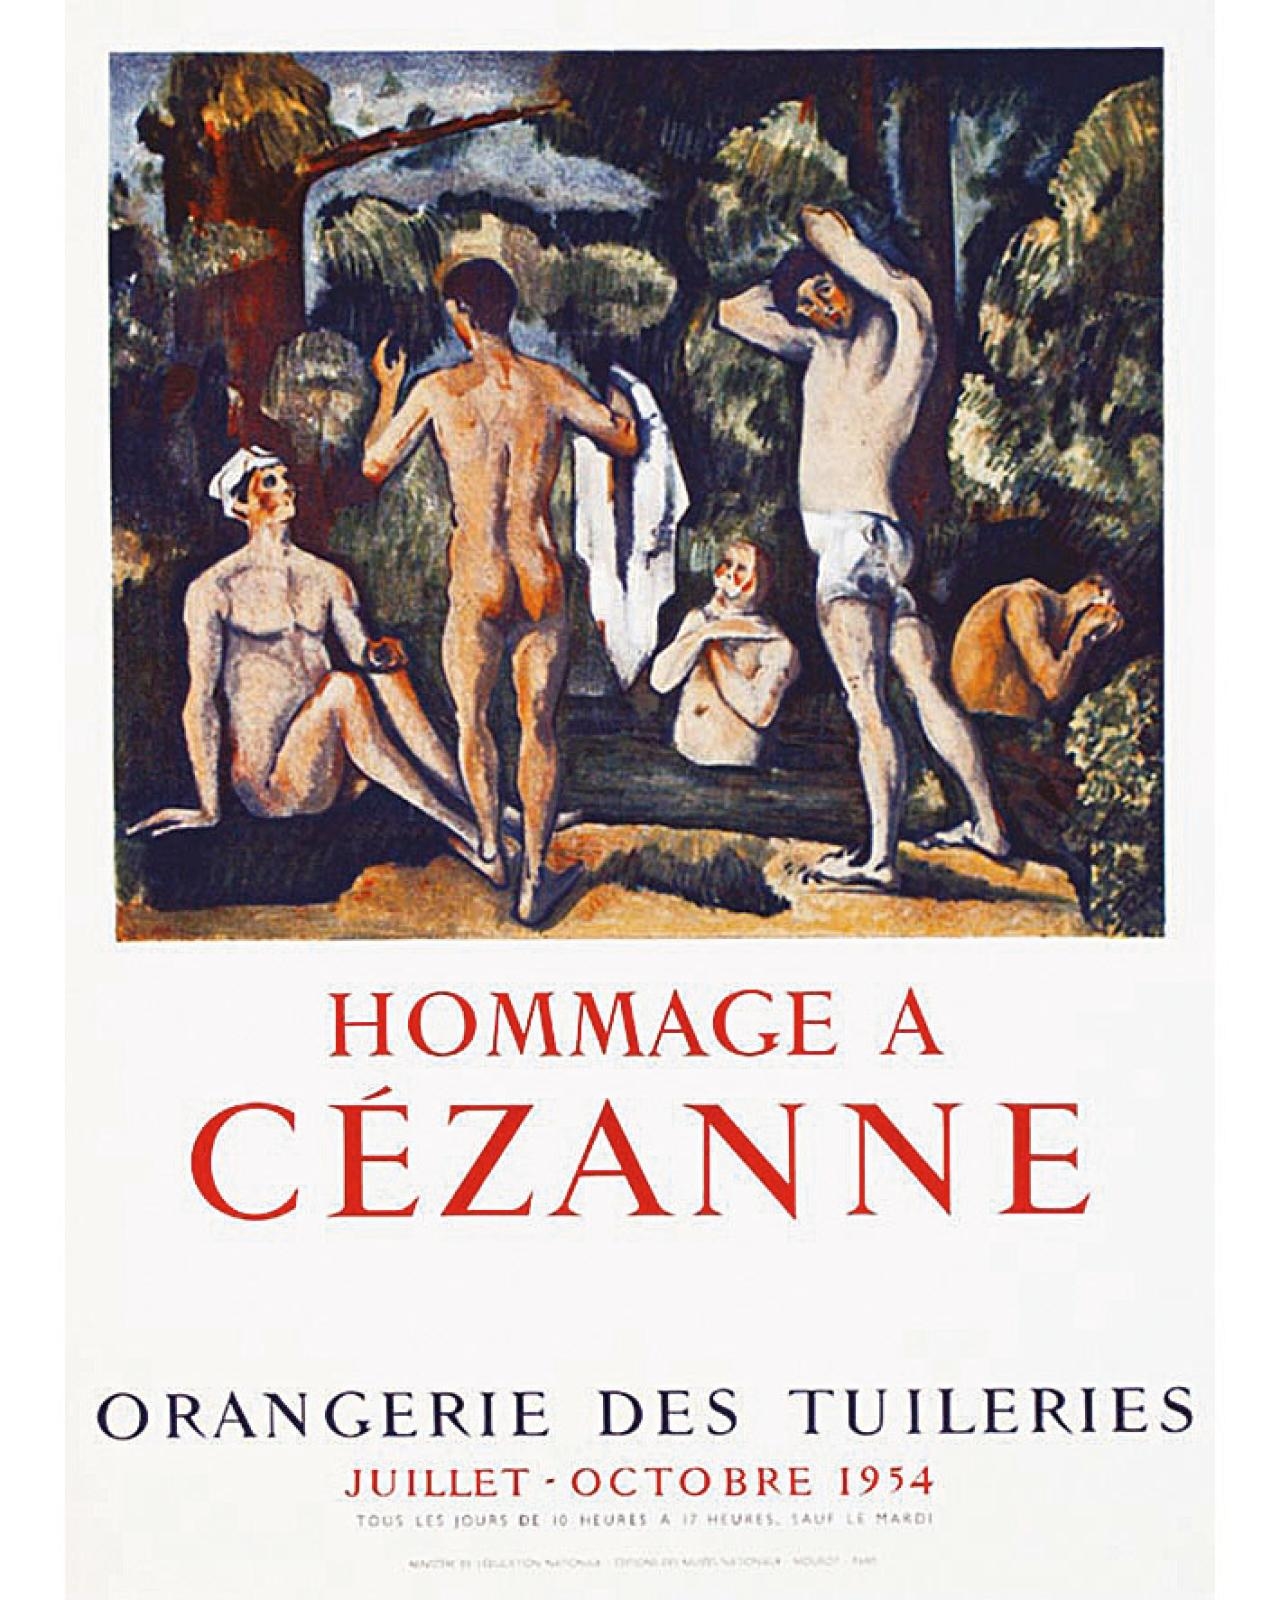 Hommage à Cézanne Orangerie des Tuileries by Paul Cézanne, 1954